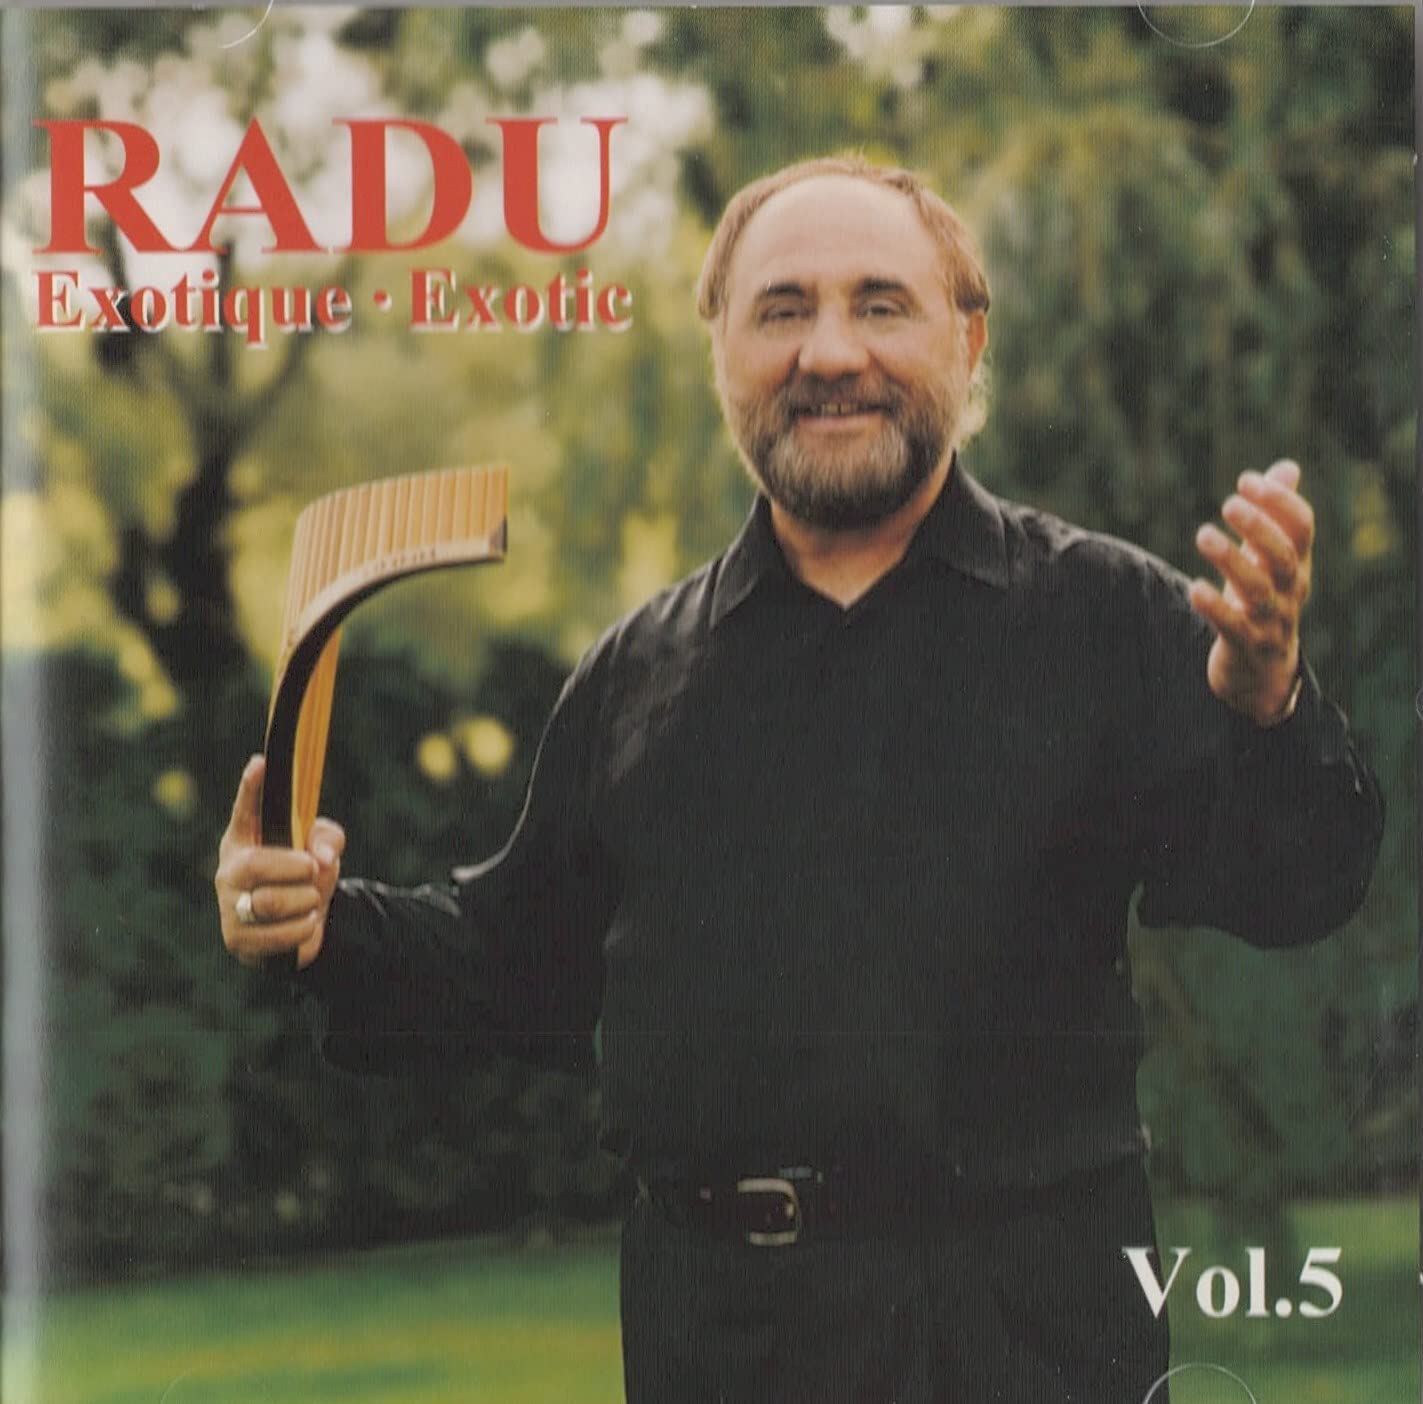 Exotique - Exotic Vol.5 [Audio CD] Radu